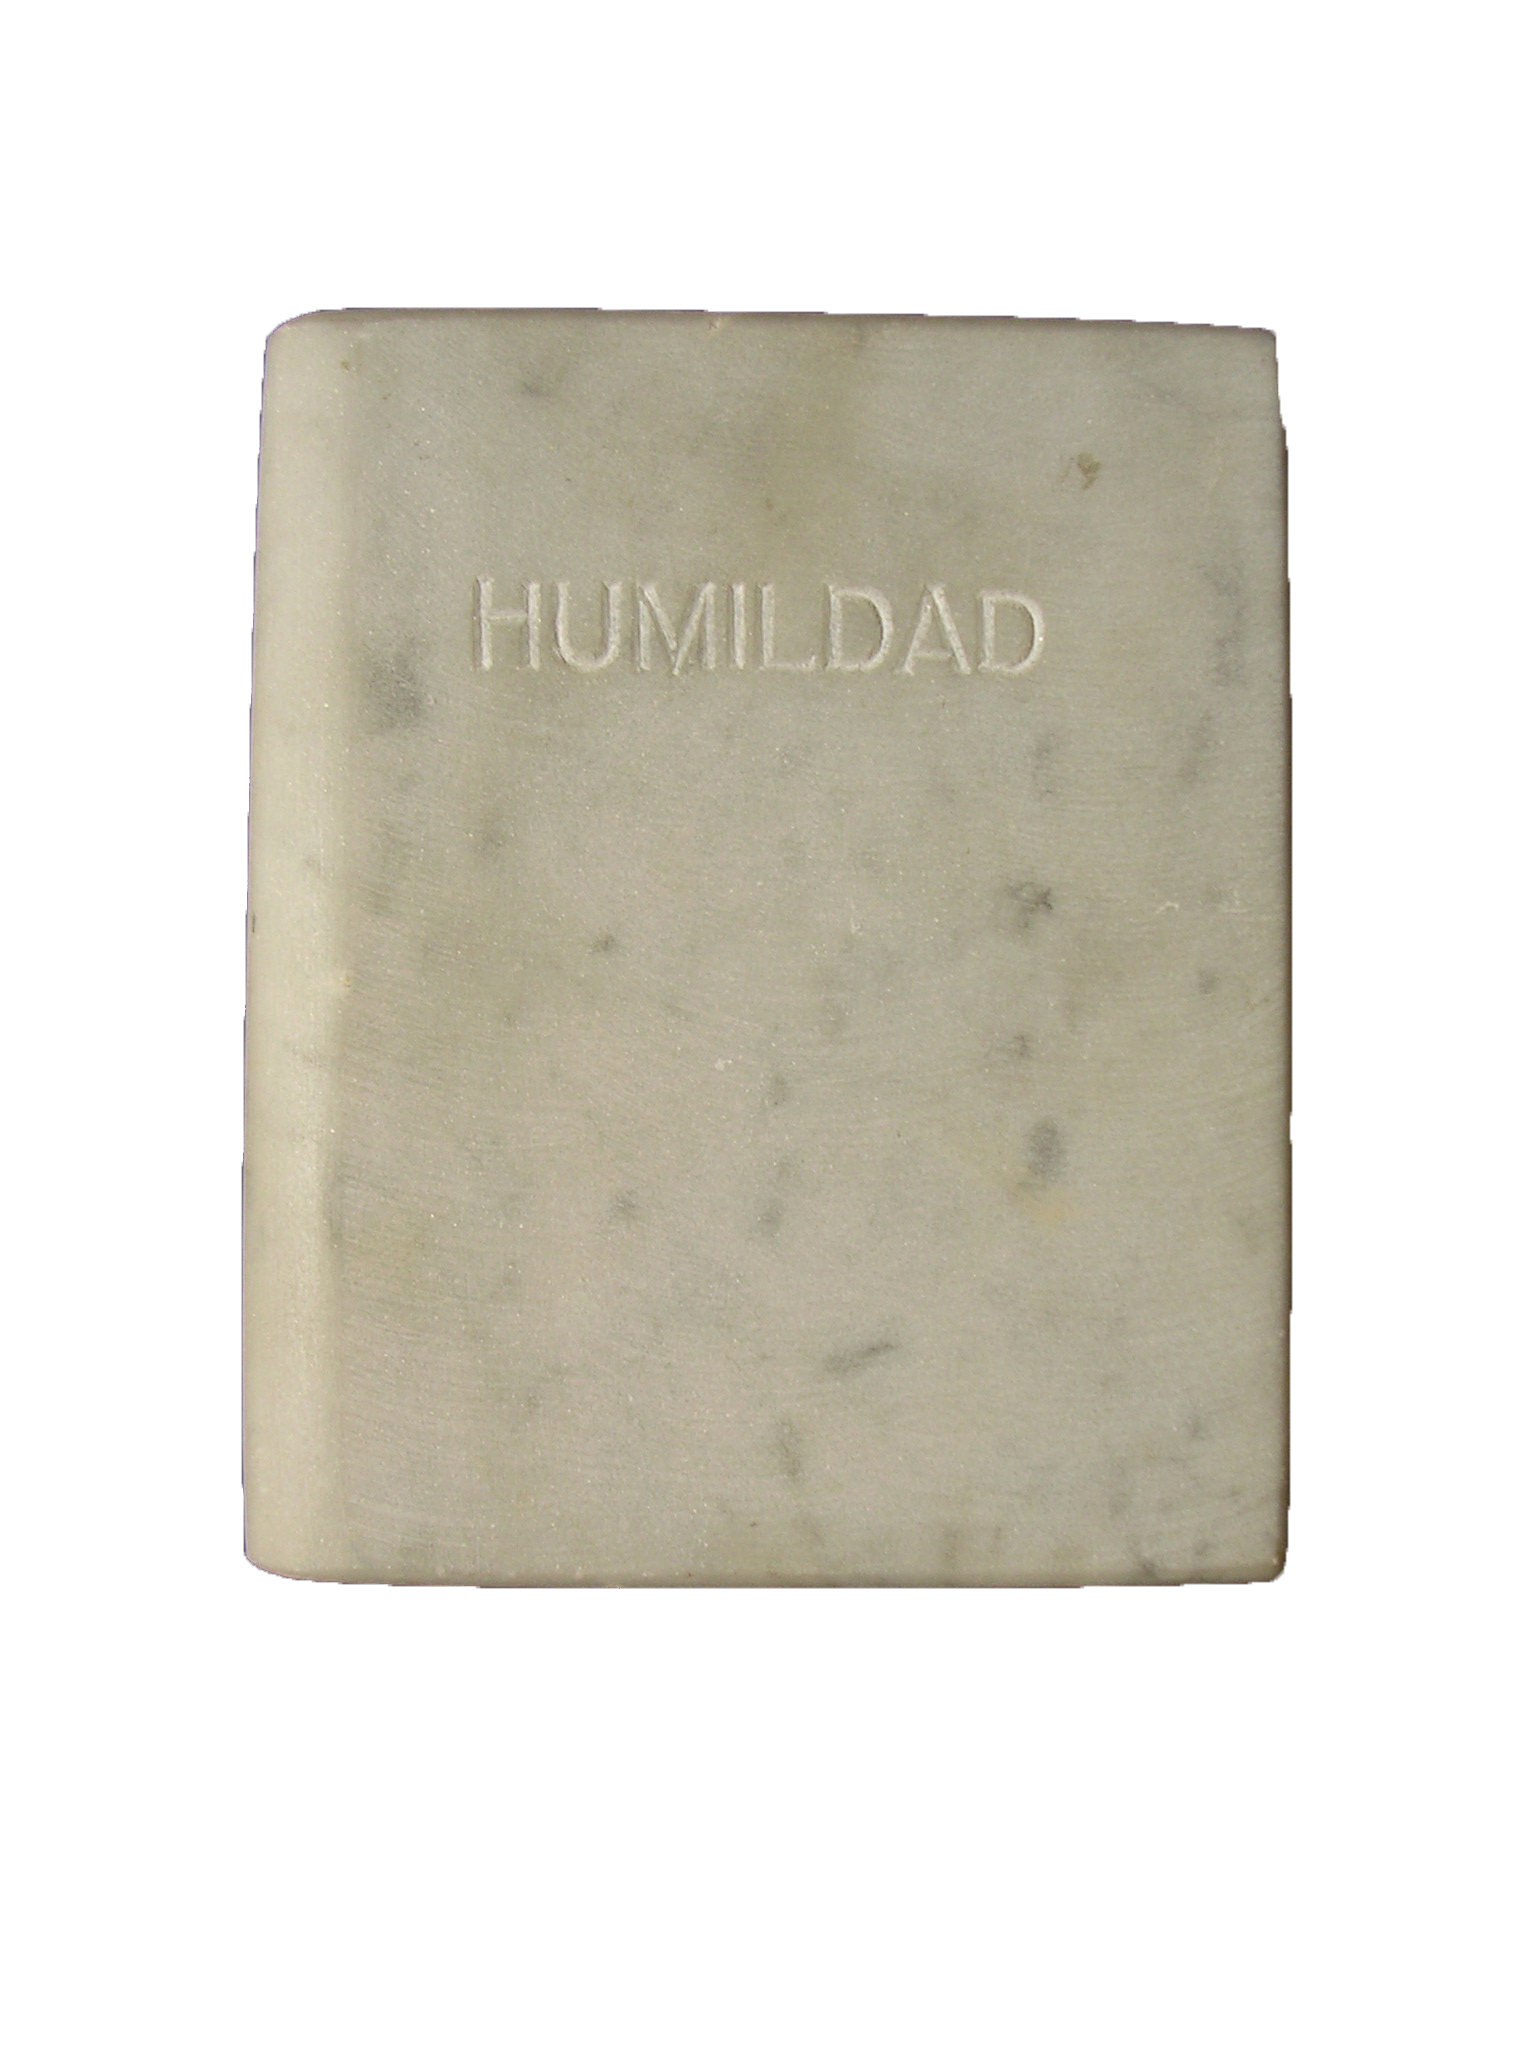 Humildad Las siete virtudes libro de mármol de carrar blanco 18x3x15 cm 1984